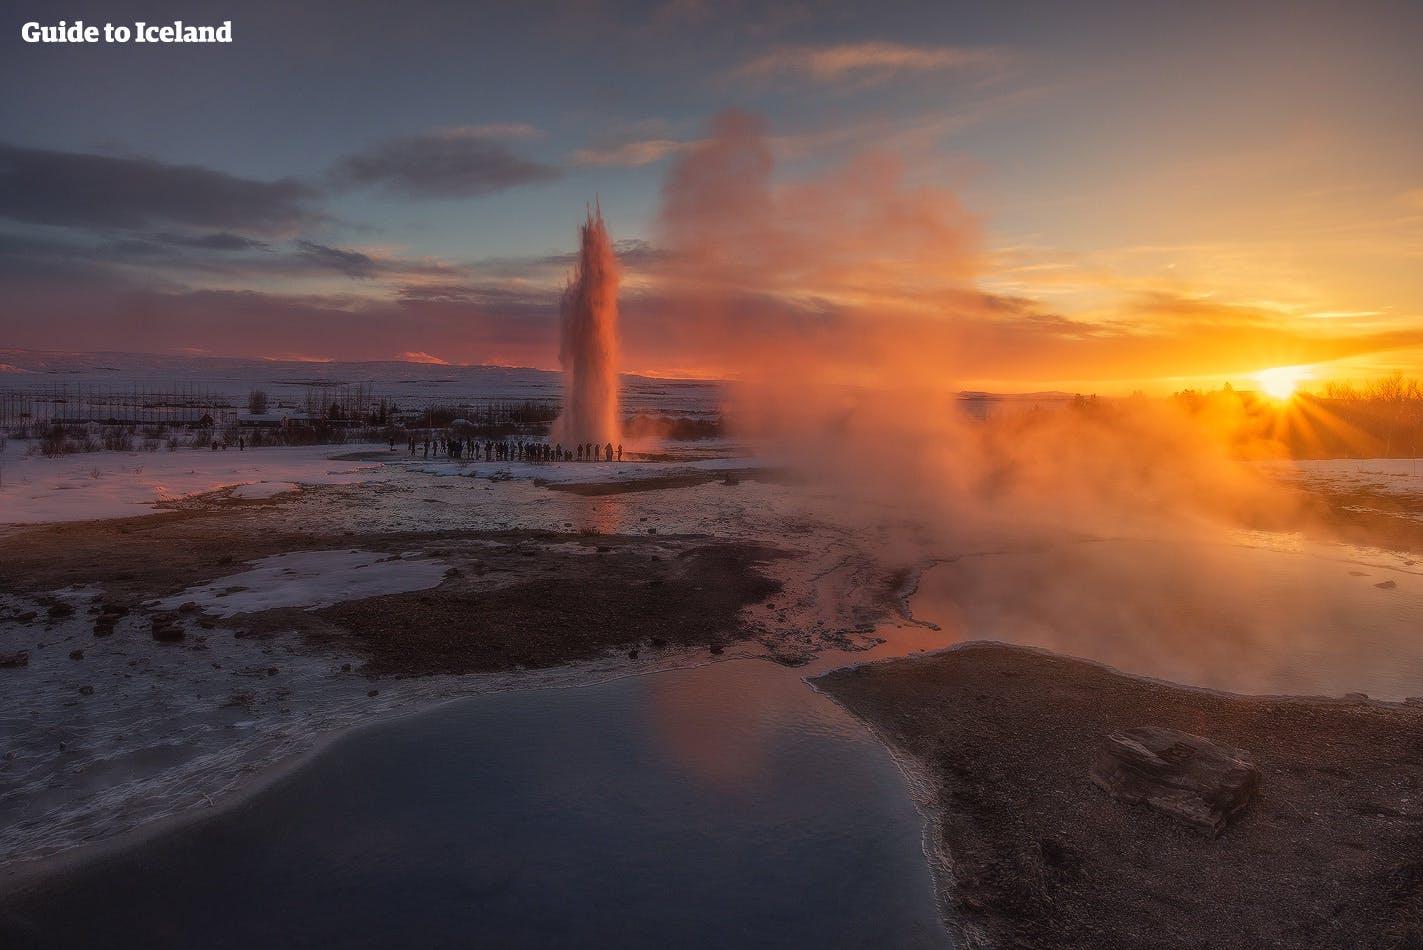 Gli effetti del costante "crepuscolo" durante le poche ore di sole dell'inverno islandese offrono degli scenari spettacolari per delle fotografie incredibili, come l'area geotermica di Geysir nel Sud dell'Islanda.